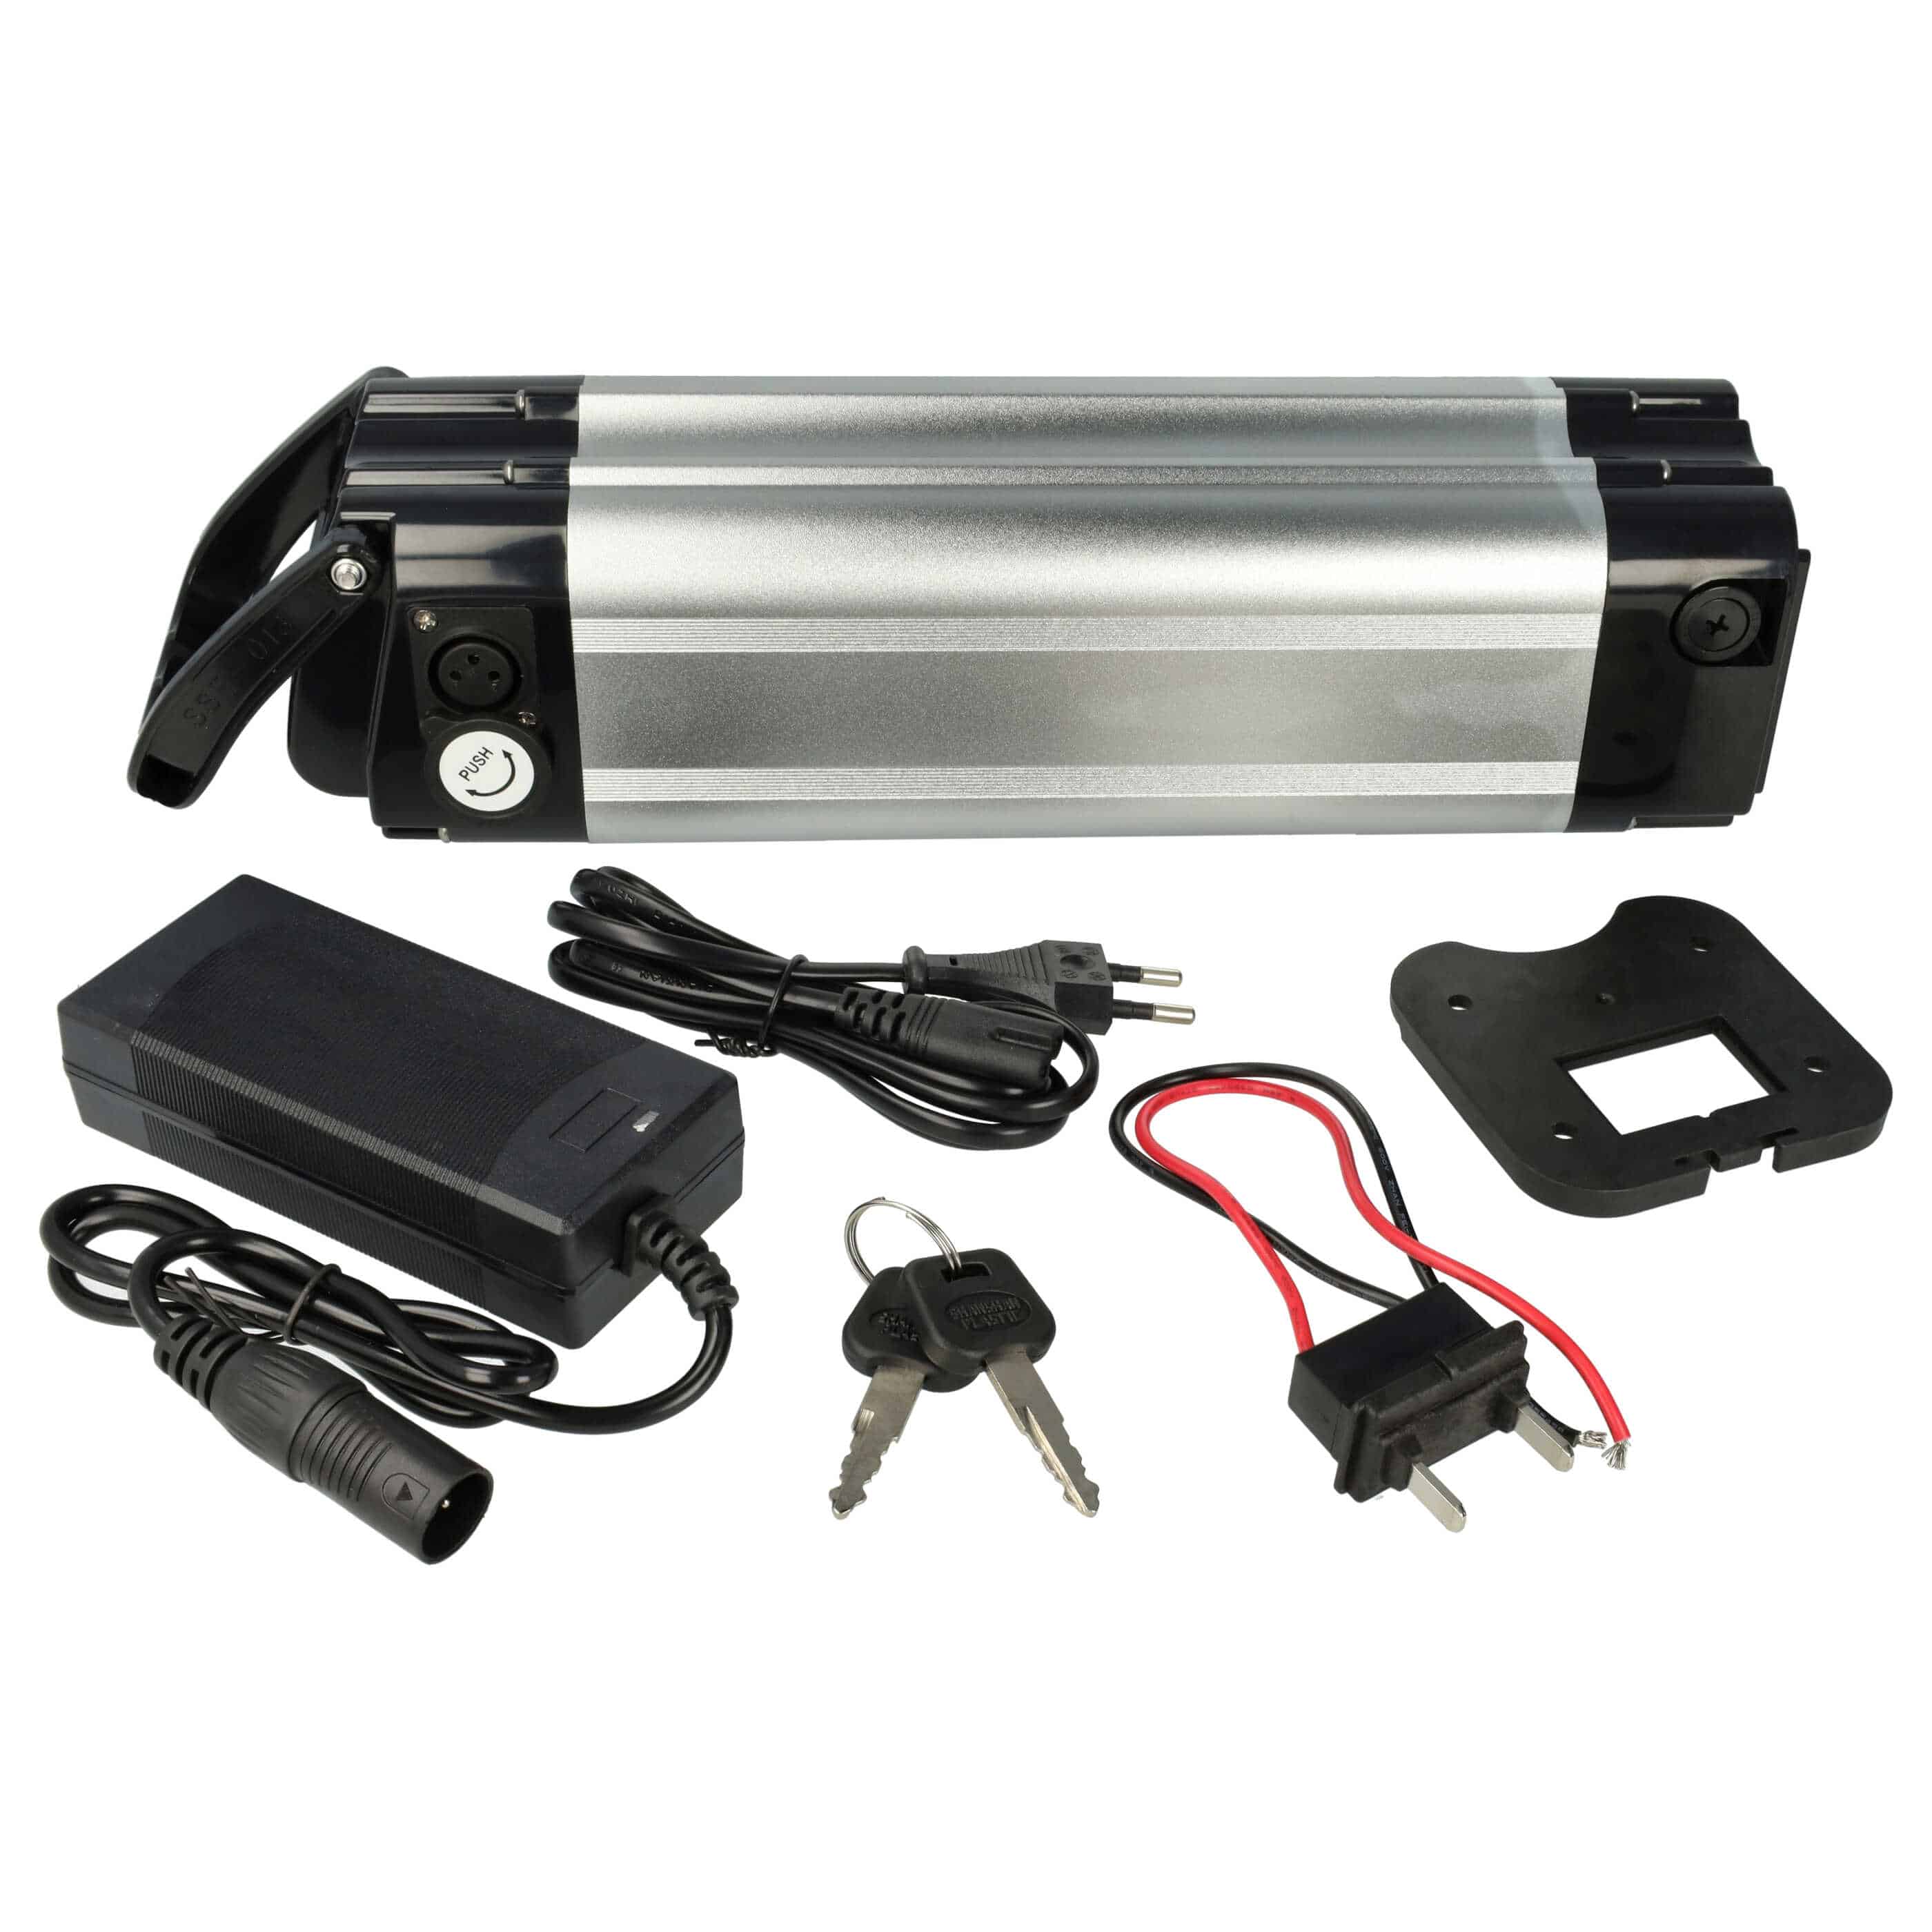 Akumulator do roweru - 10000 mAh, 24 V, czarny / srebrny